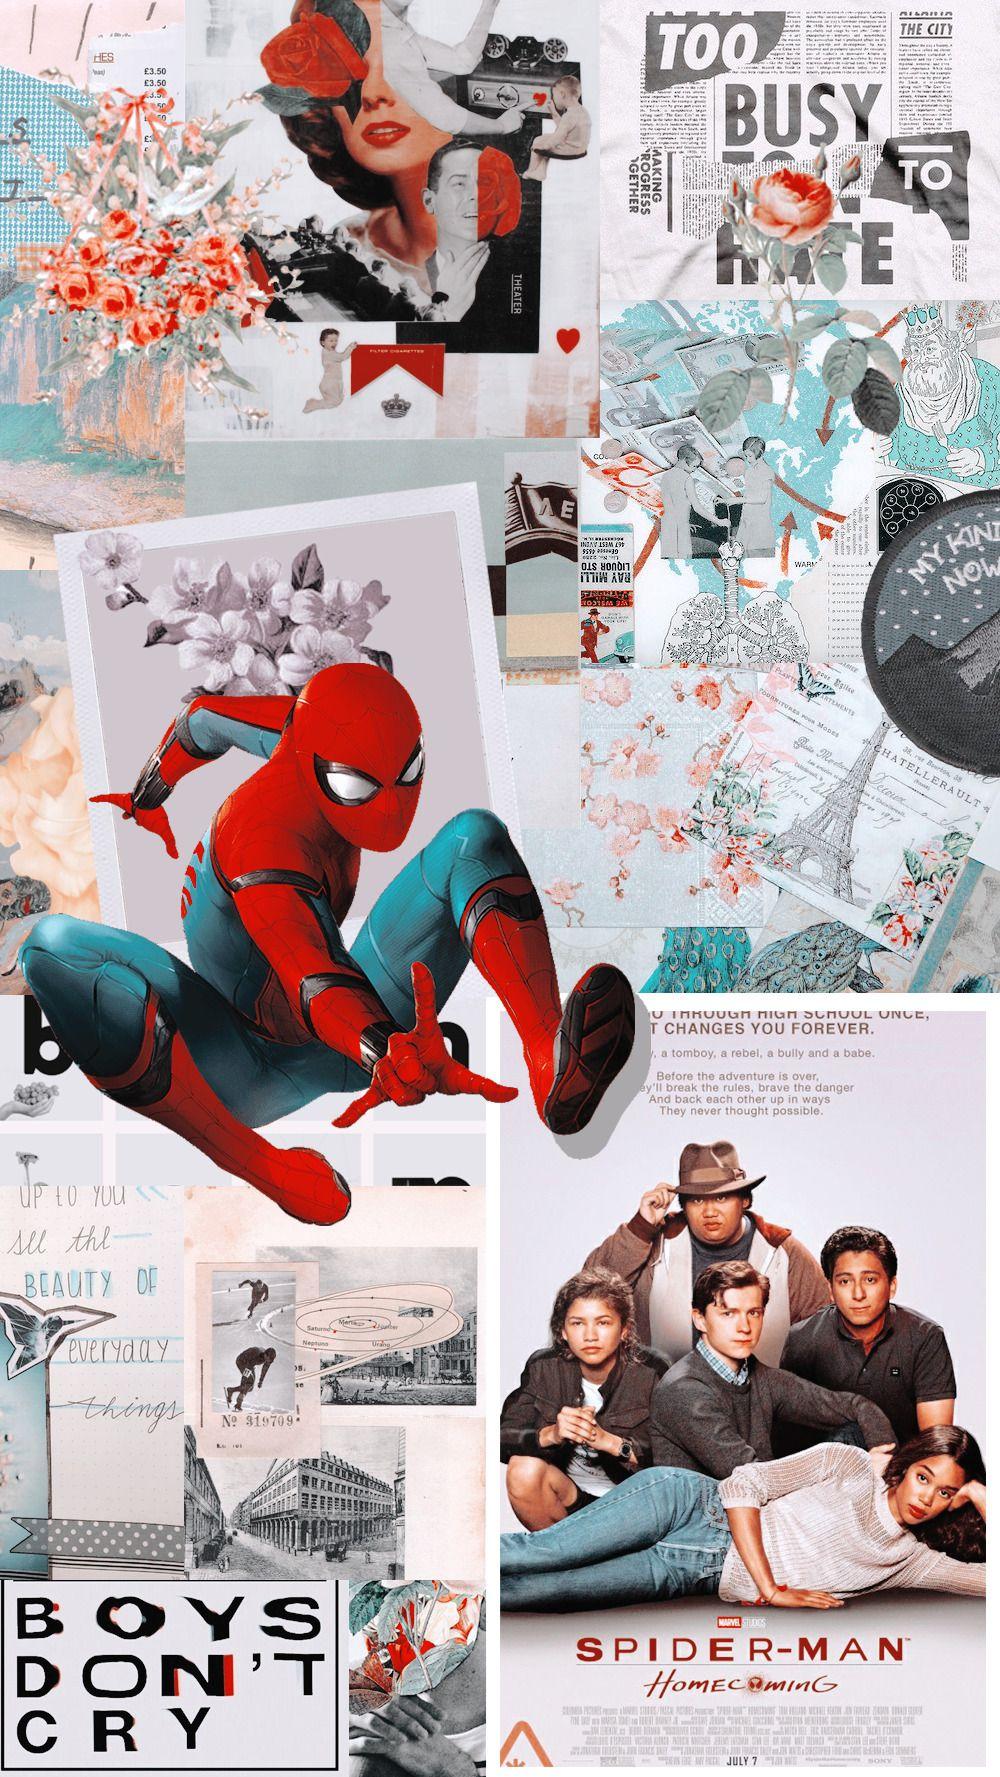 Spiderman Wallpaper Aesthetic / Spiderman ps4, games, hd, 4k. - Verdie News